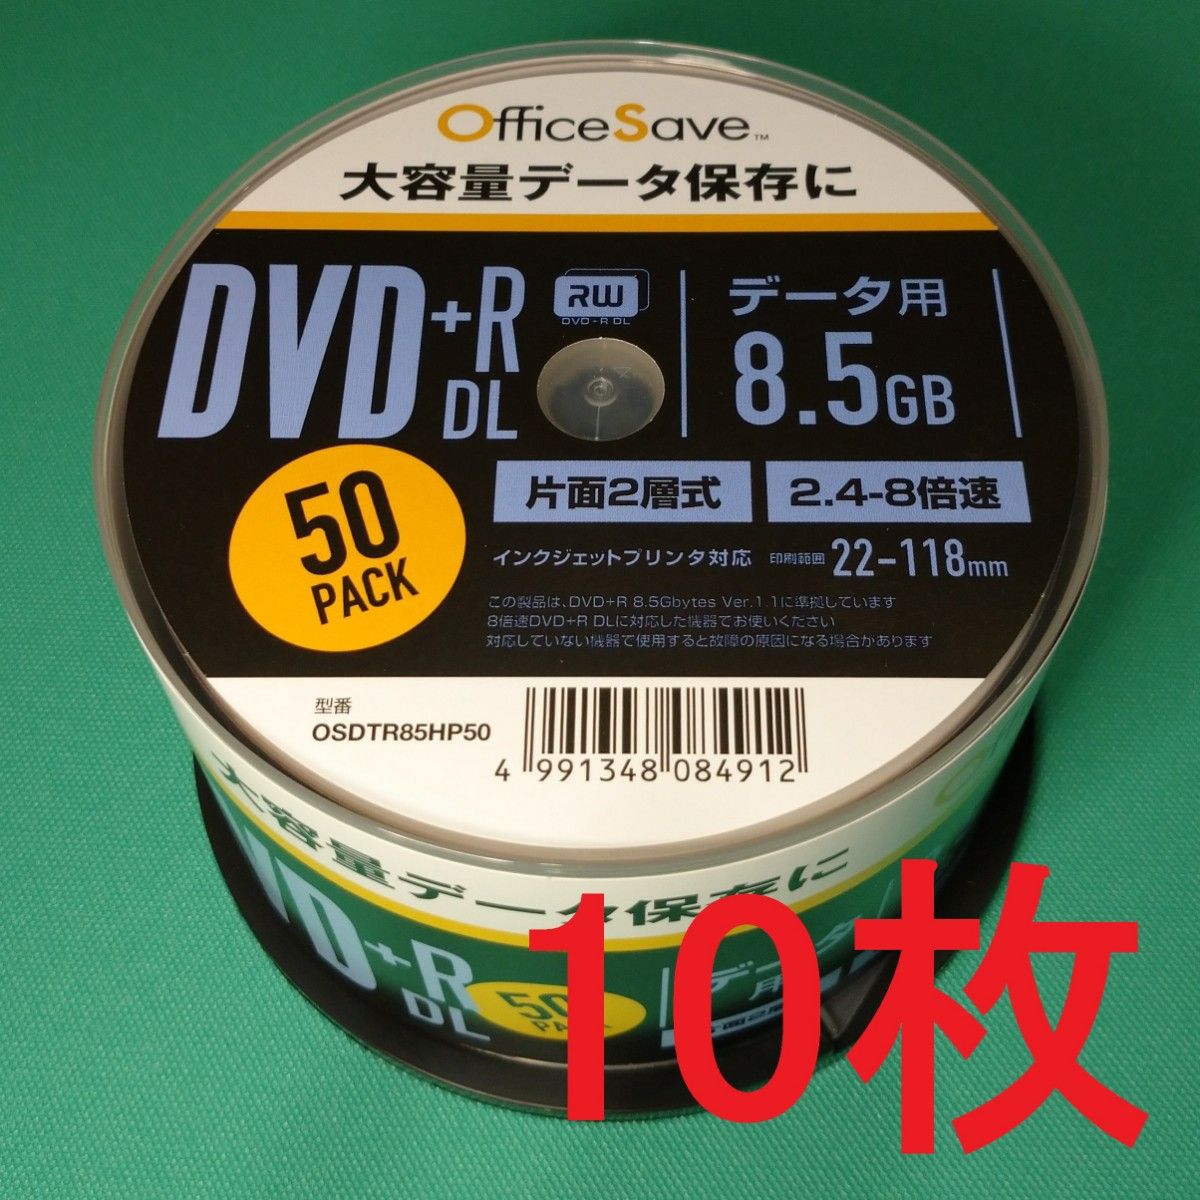 【10枚】OfficeSave 1回記録用 DVD+R DL 8.5GB ホワイトプリンタブル 片面2層 2.4-8倍速 データ用